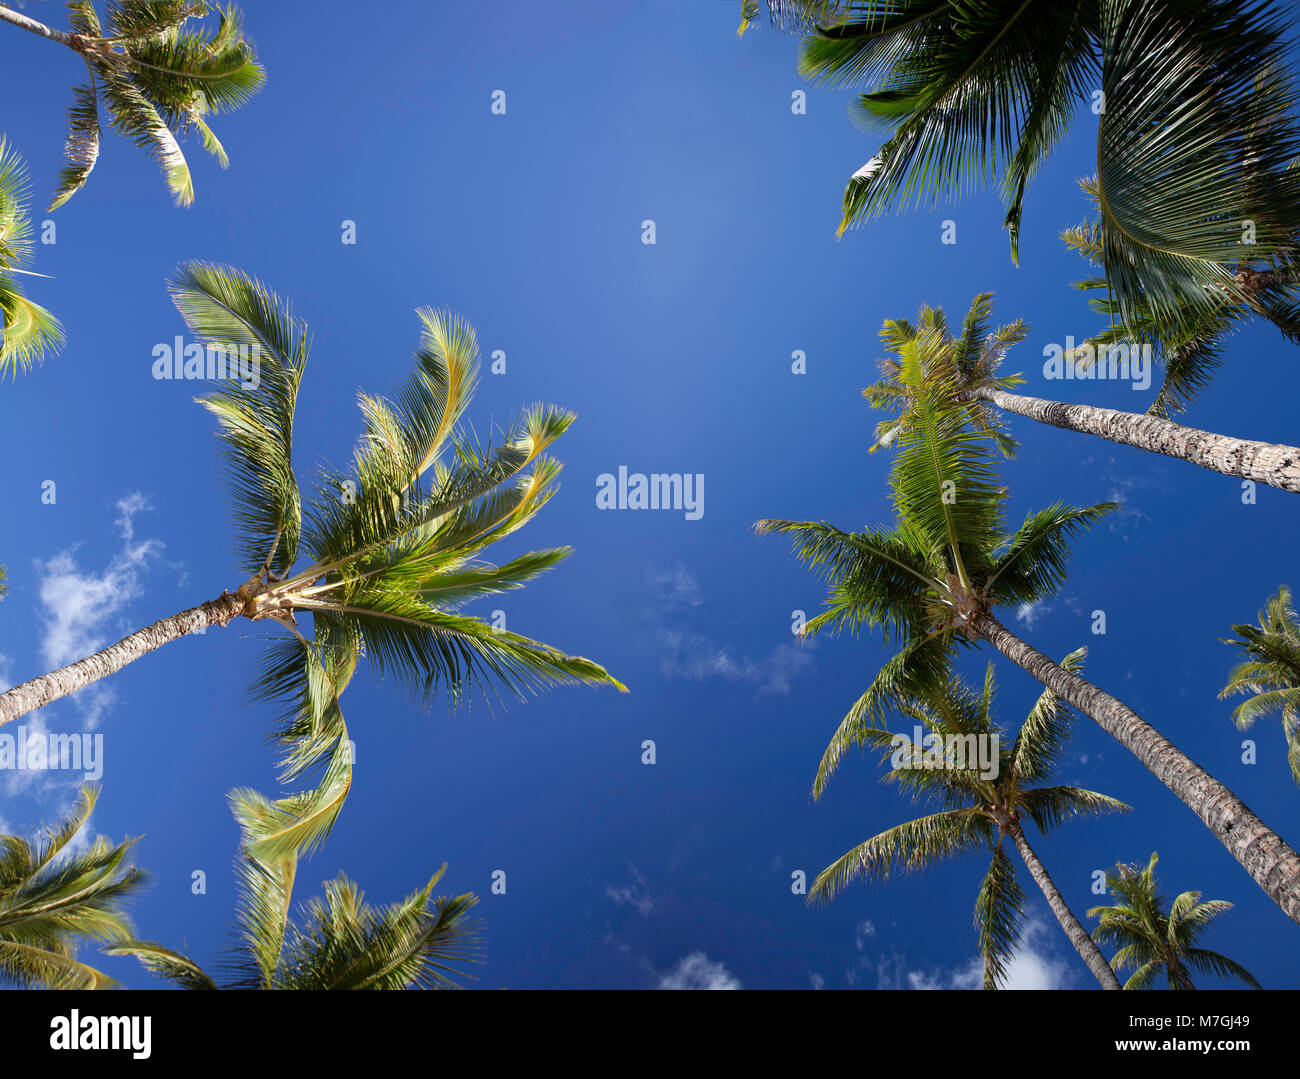 Eine Ansicht von unten der Palmen und blauem Himmel, Maui, Hawaii. Zwei Aufnahmen wurden digital kombiniert dieses große Datei Größe zu erstellen. Stockfoto